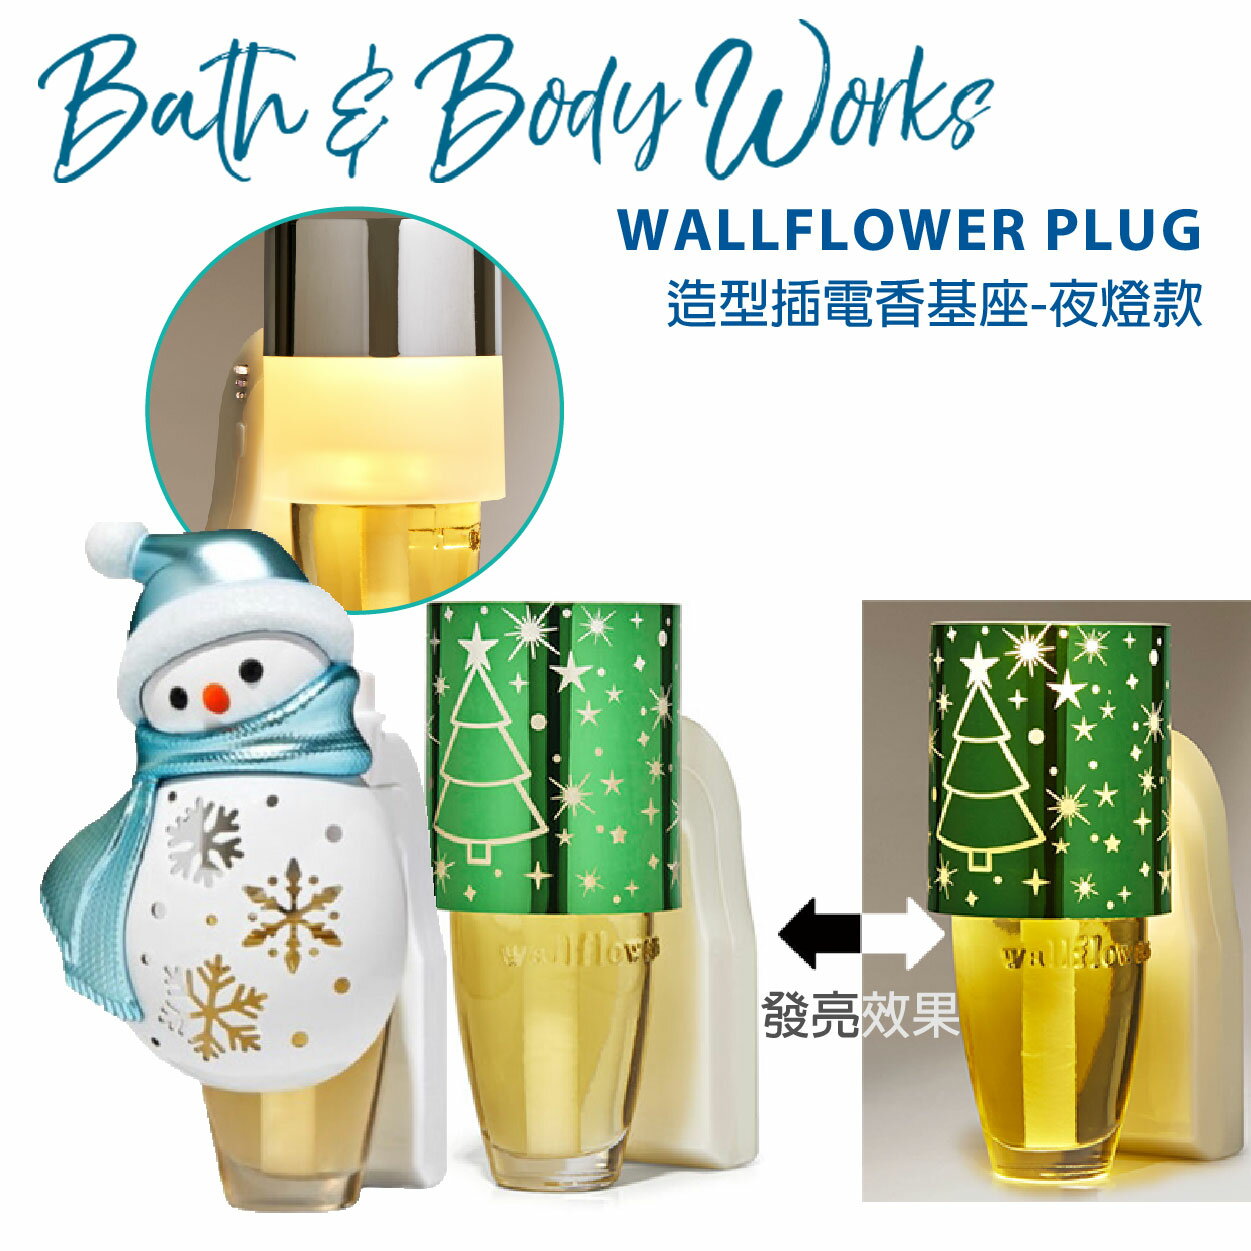 【彤彤小舖】代購 Bath & Body Works Wallflowers 插電香基座 (夜燈款) BBW美國原廠